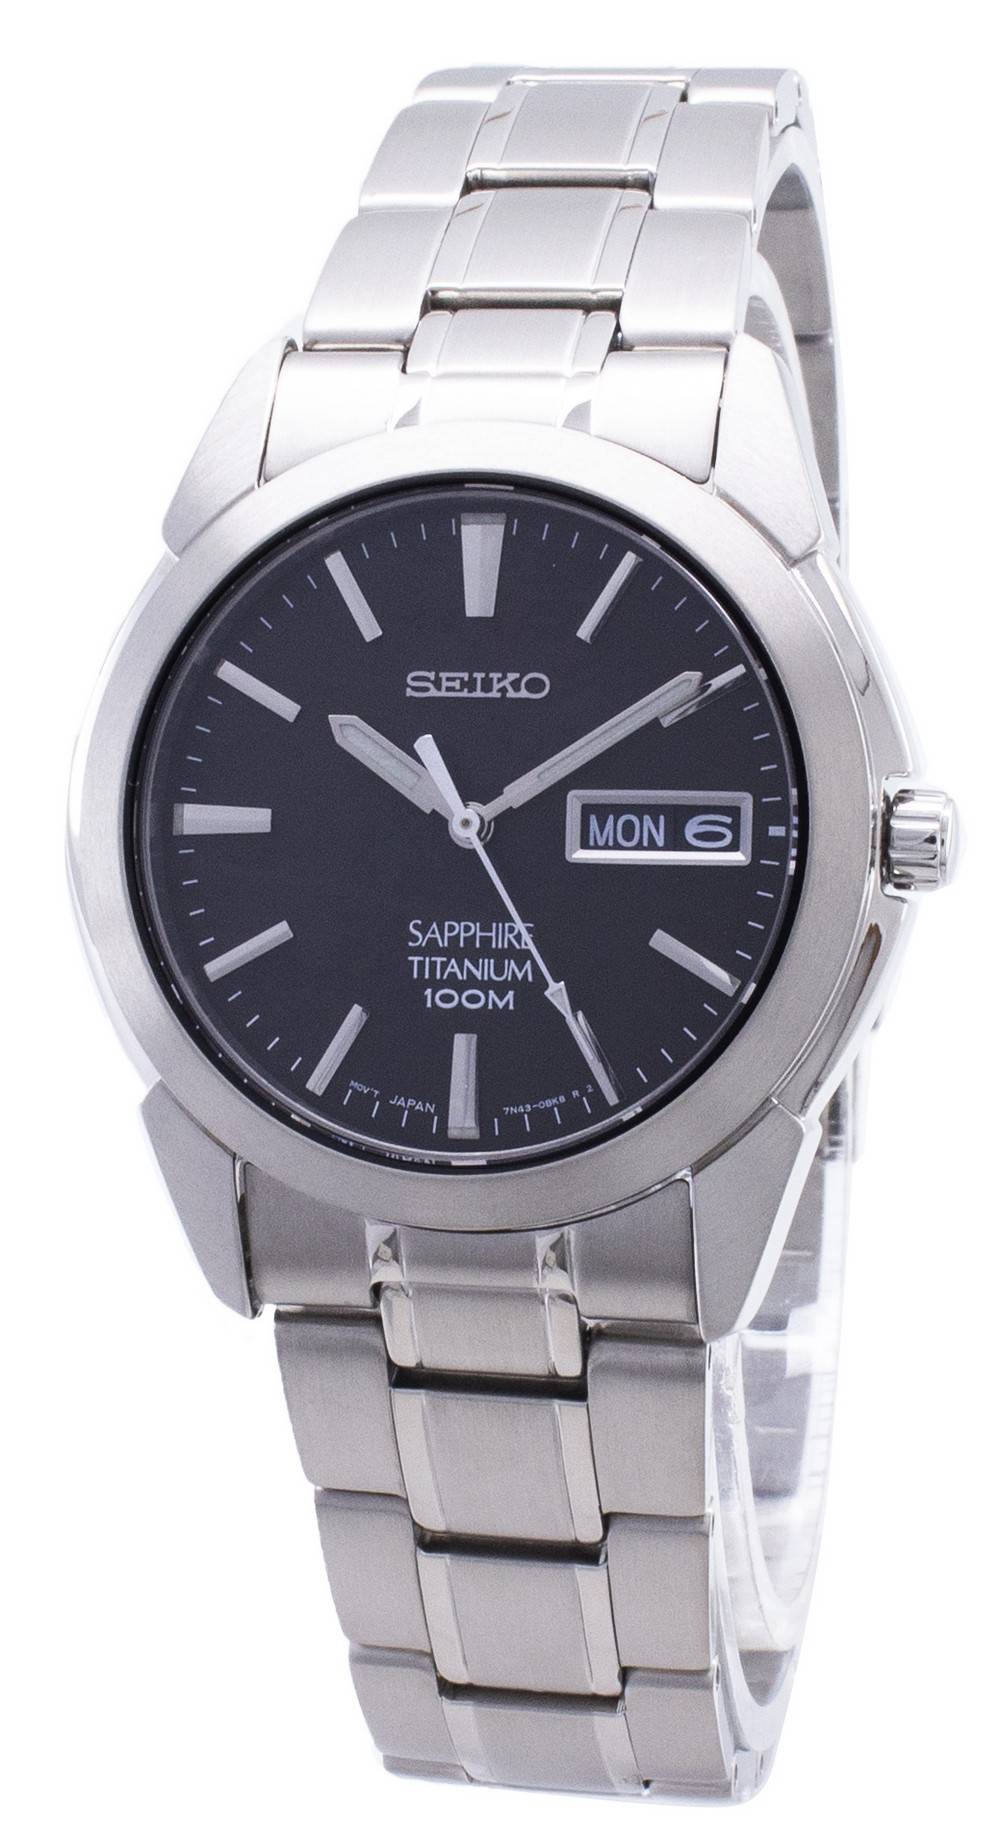 Seiko Titanium Sapphire SGG731 SGG731P1 SGG731P Men's Watch